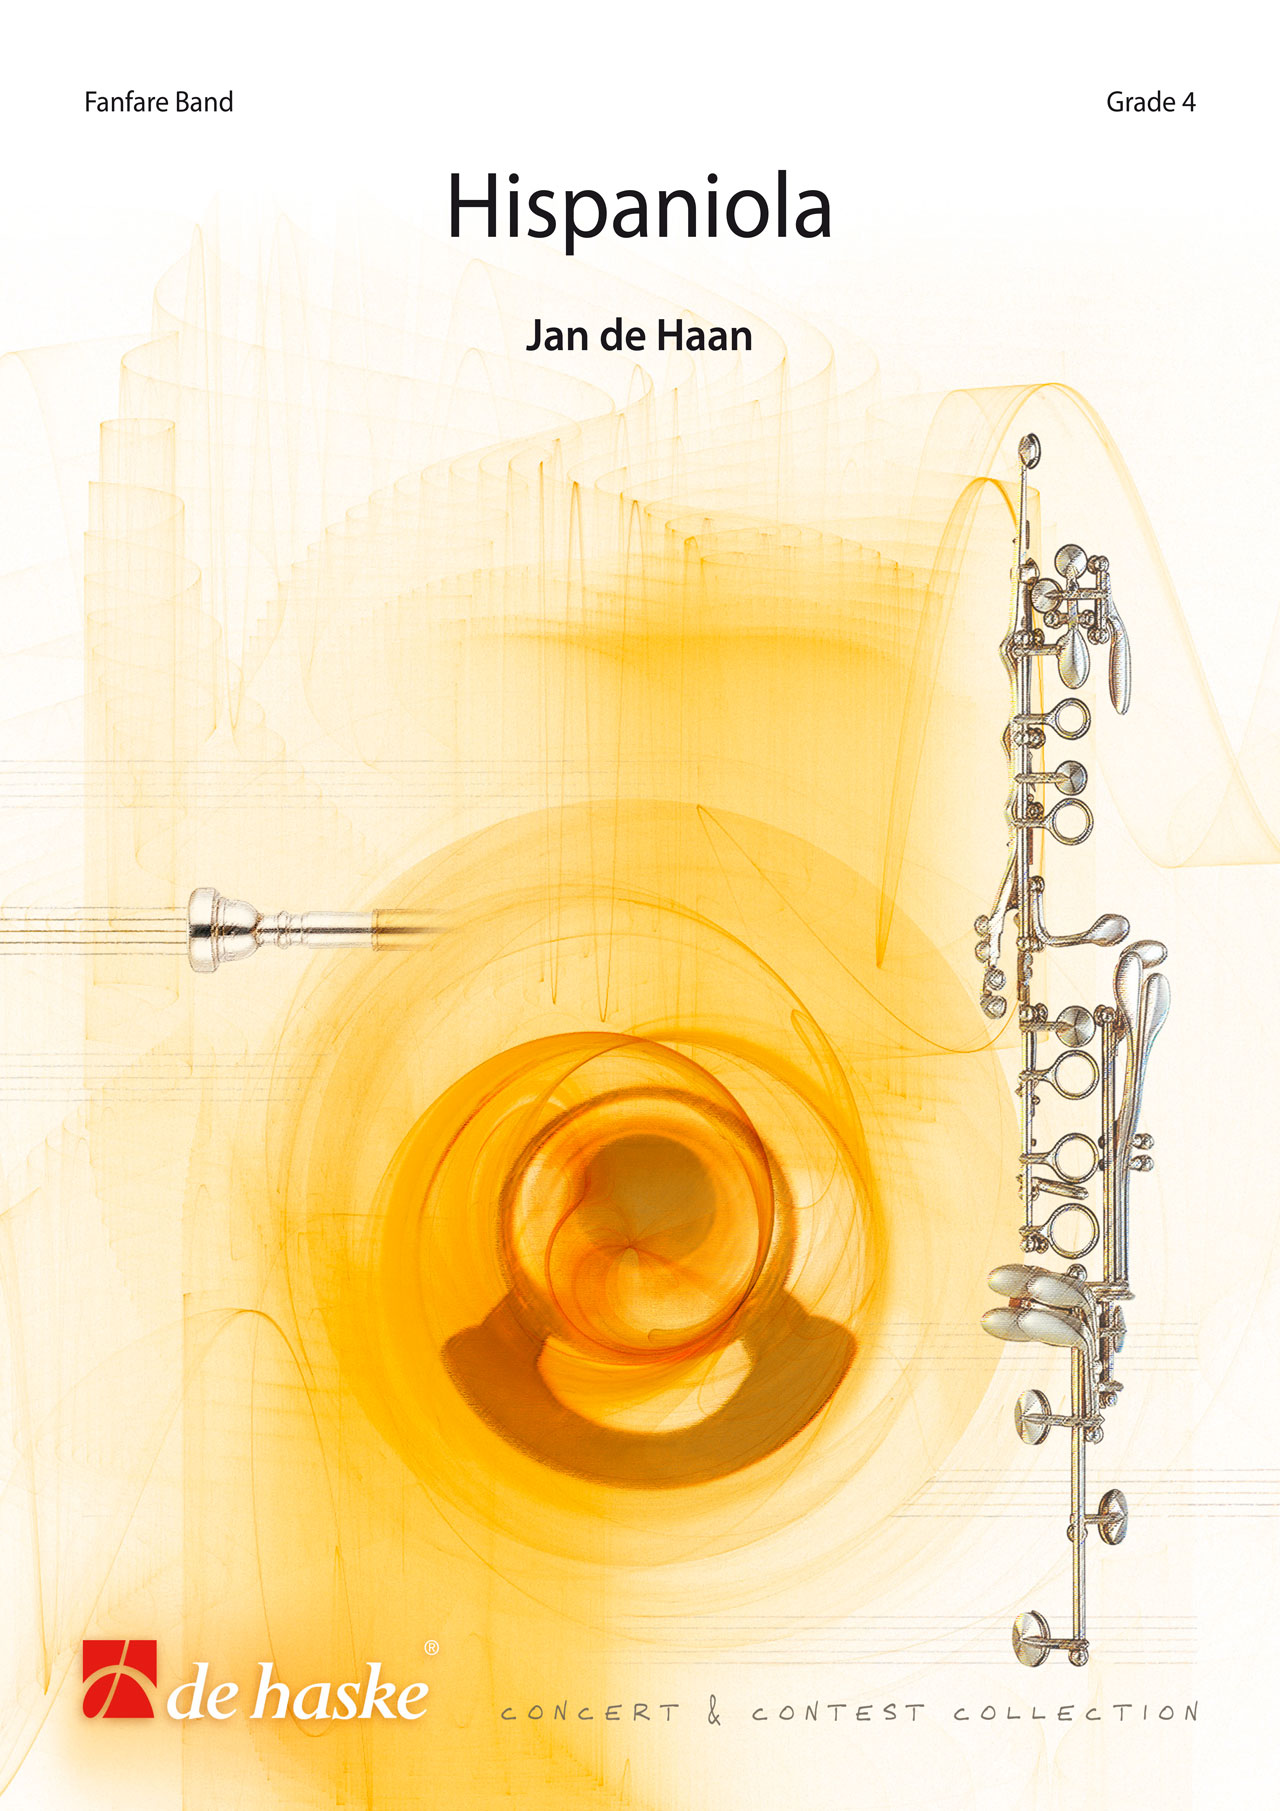 Jan de Haan: Hispaniola: Fanfare Band: Score & Parts